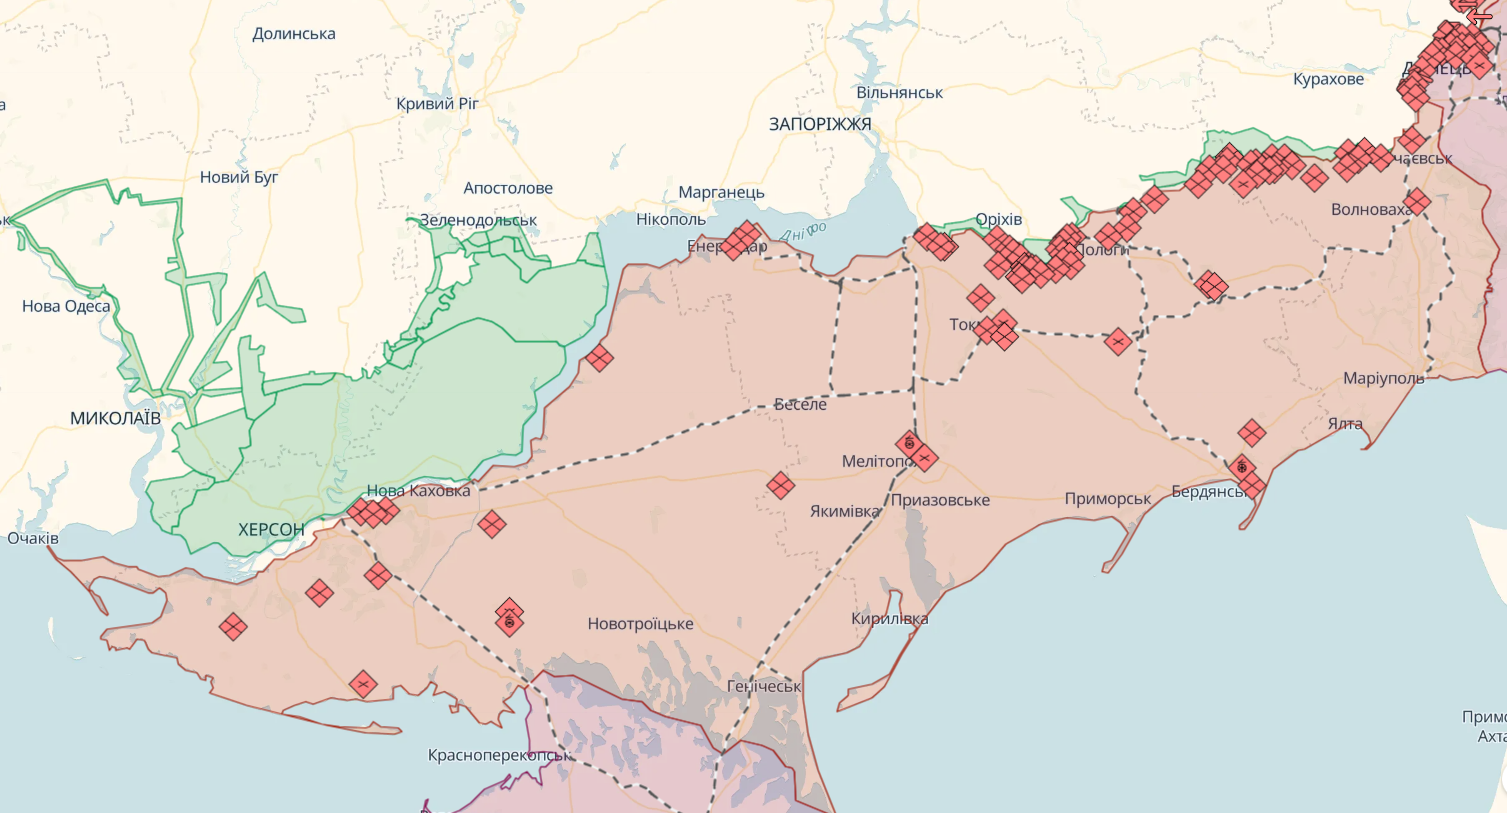 Оперативная обстановка на востоке и юге Украины остается сложной: произошло 56 боевых столкновений – Генштаб